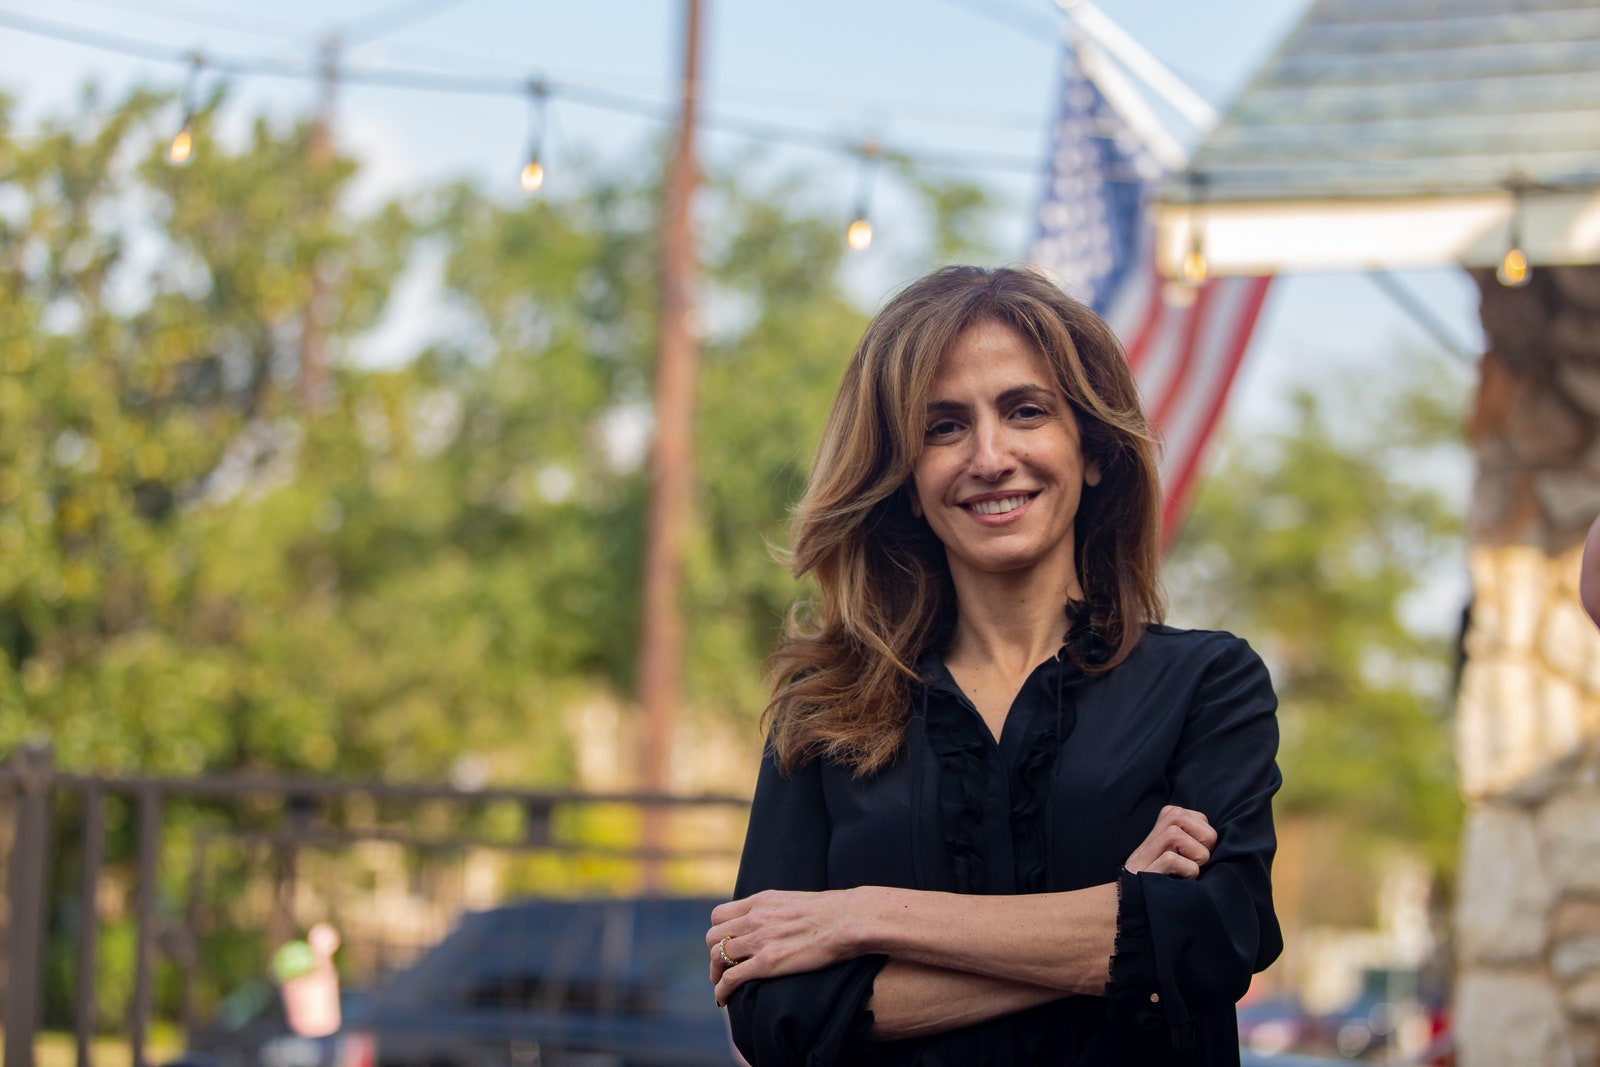  یک ایرانی- آمریکایی نامزد مجلس نمایندگان آمریکا + عکس 